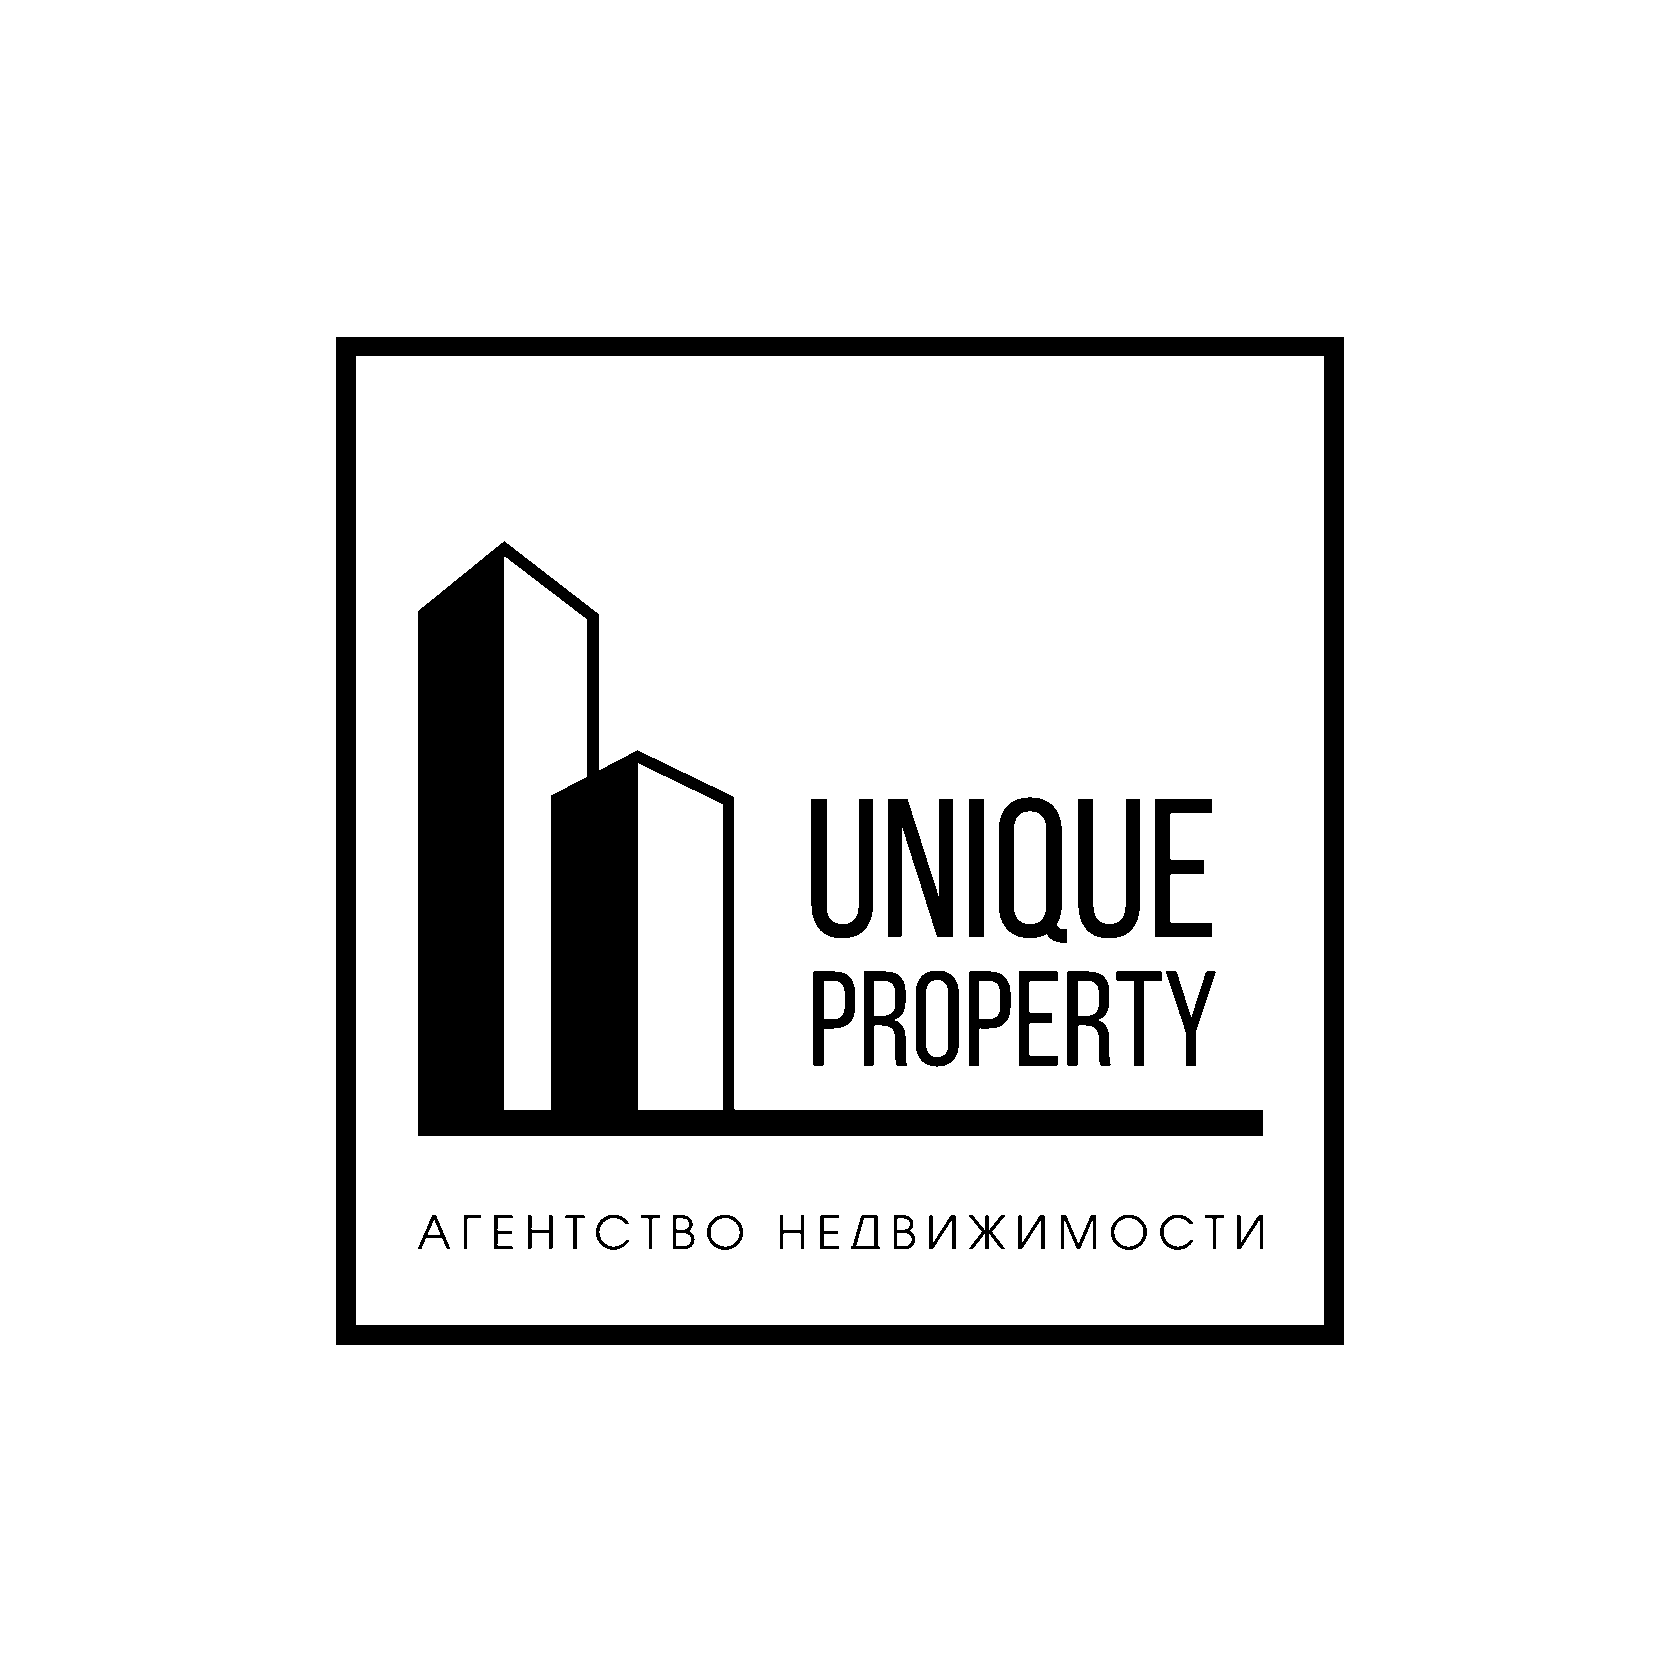 Unique Property